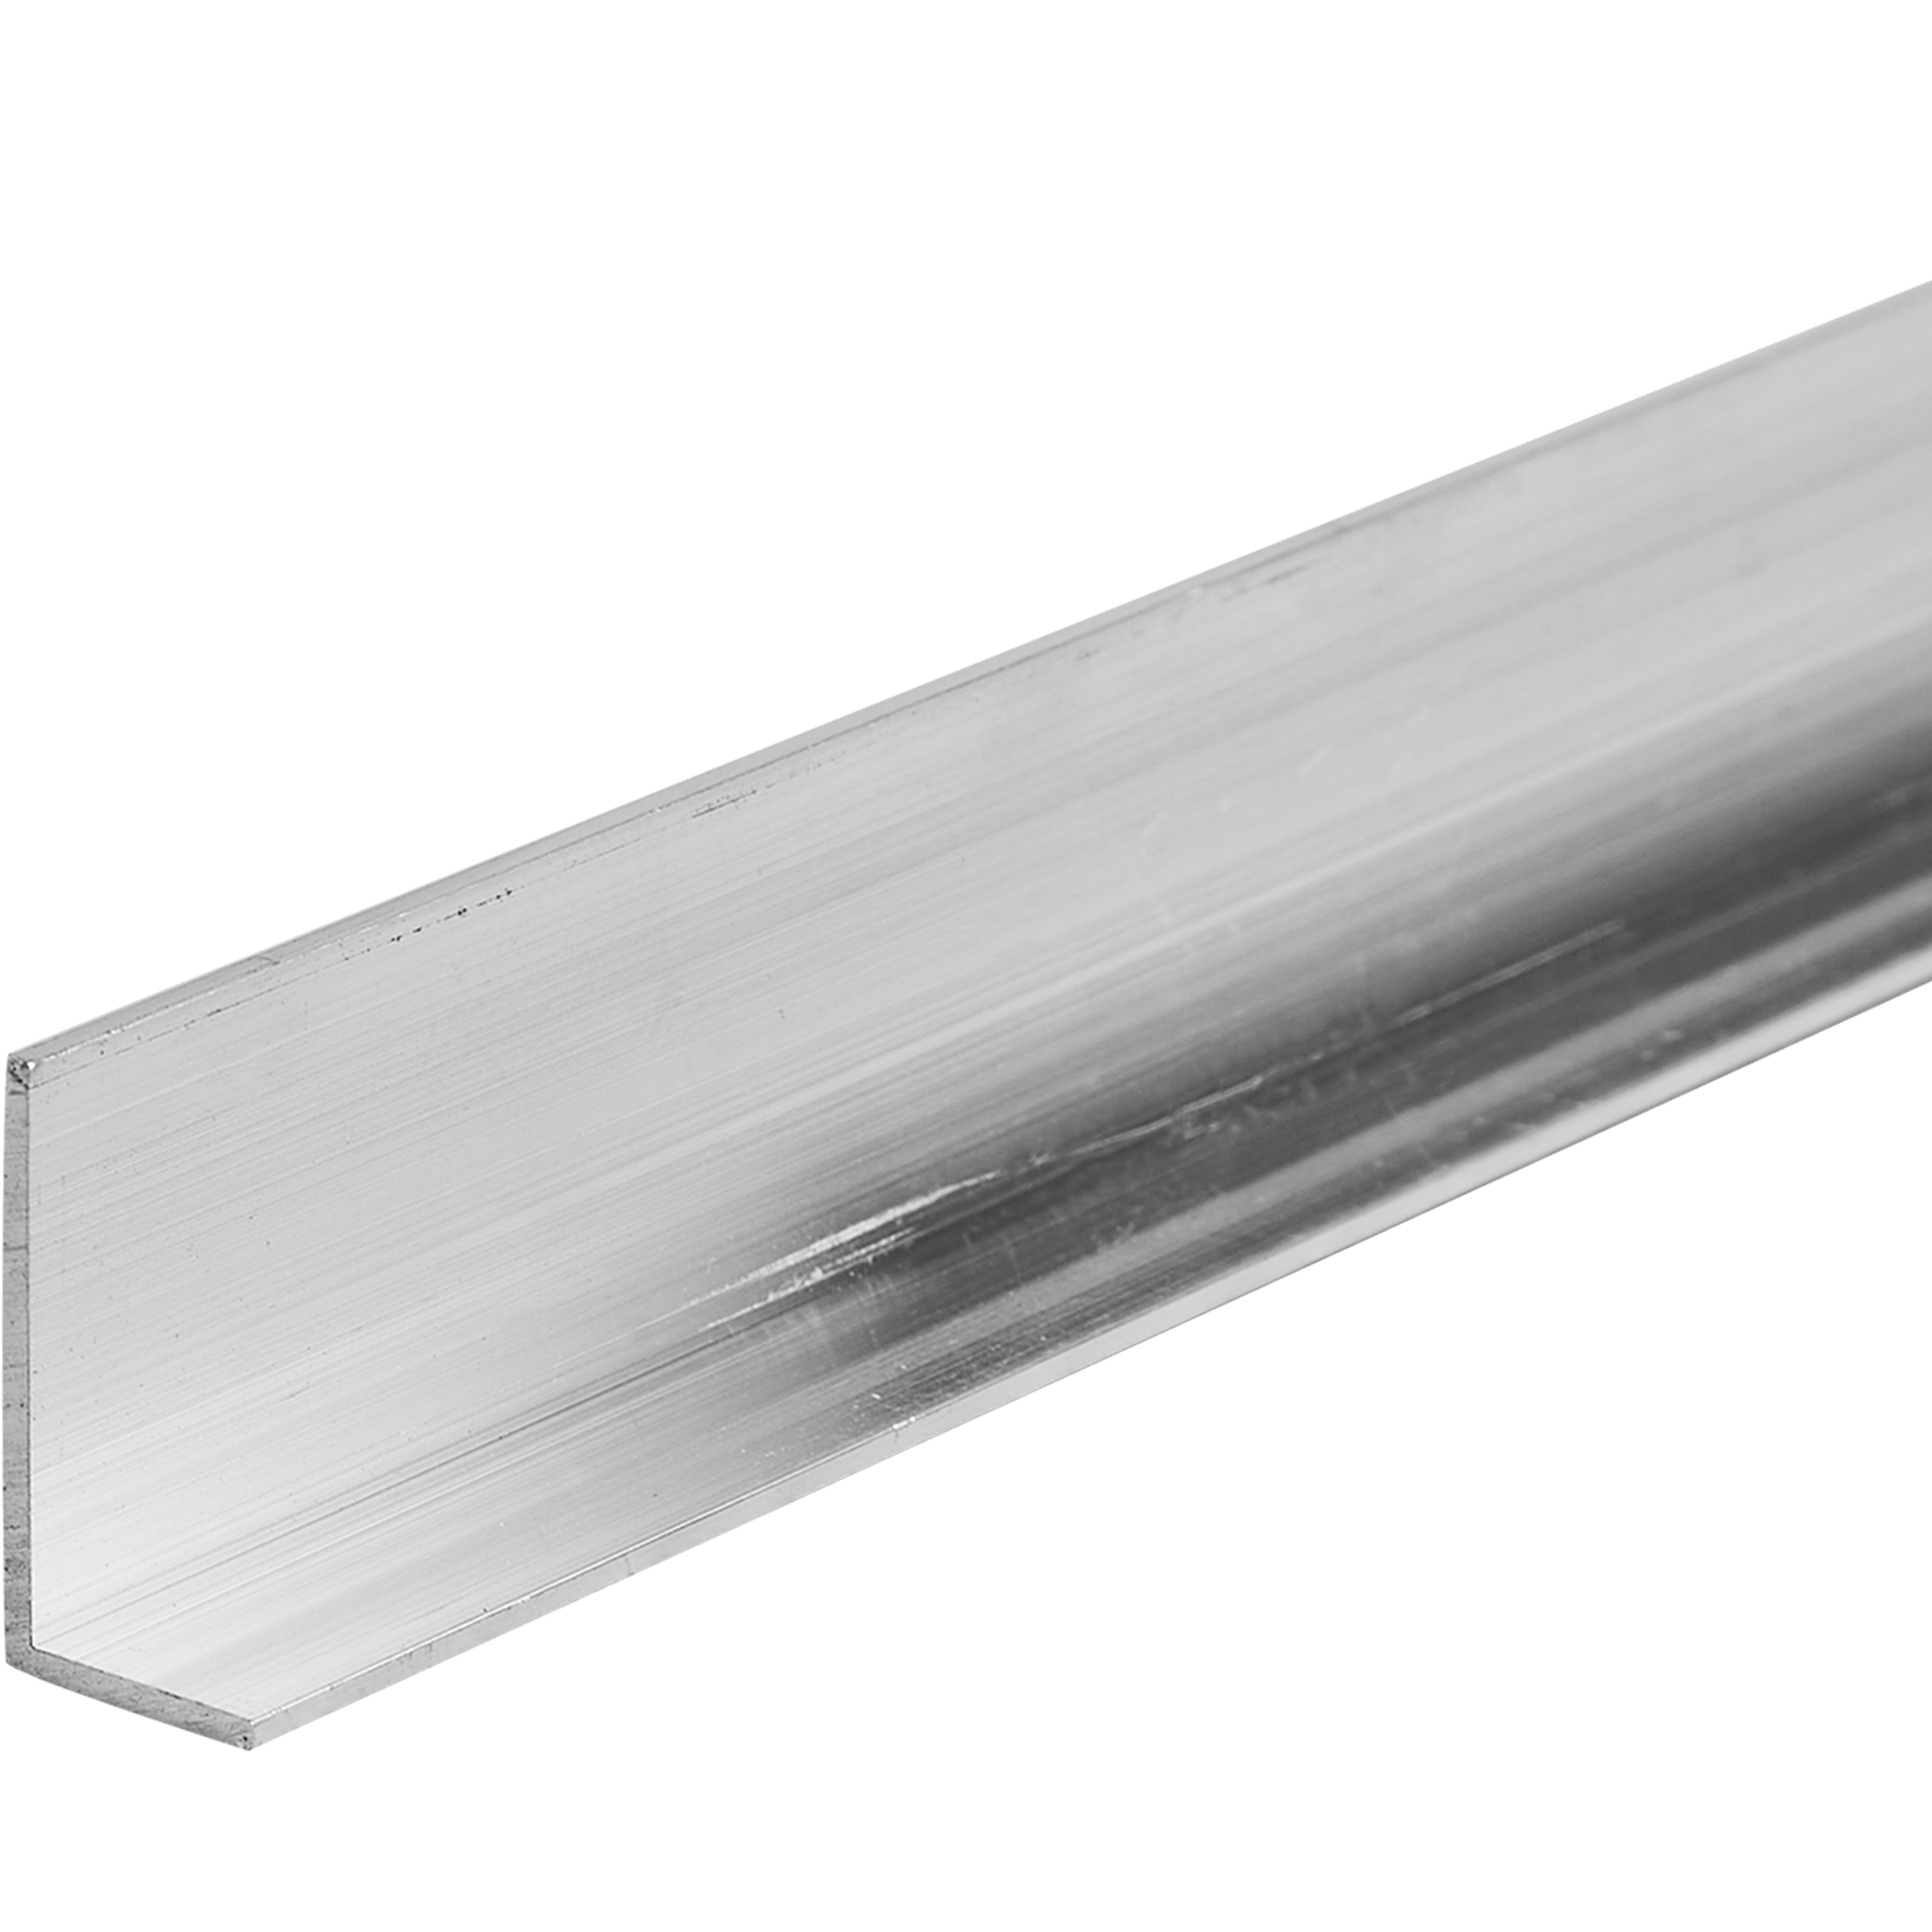 L-профиль с неравными сторонами 20x10x1.2x2700 мм, алюминий, цвет серый